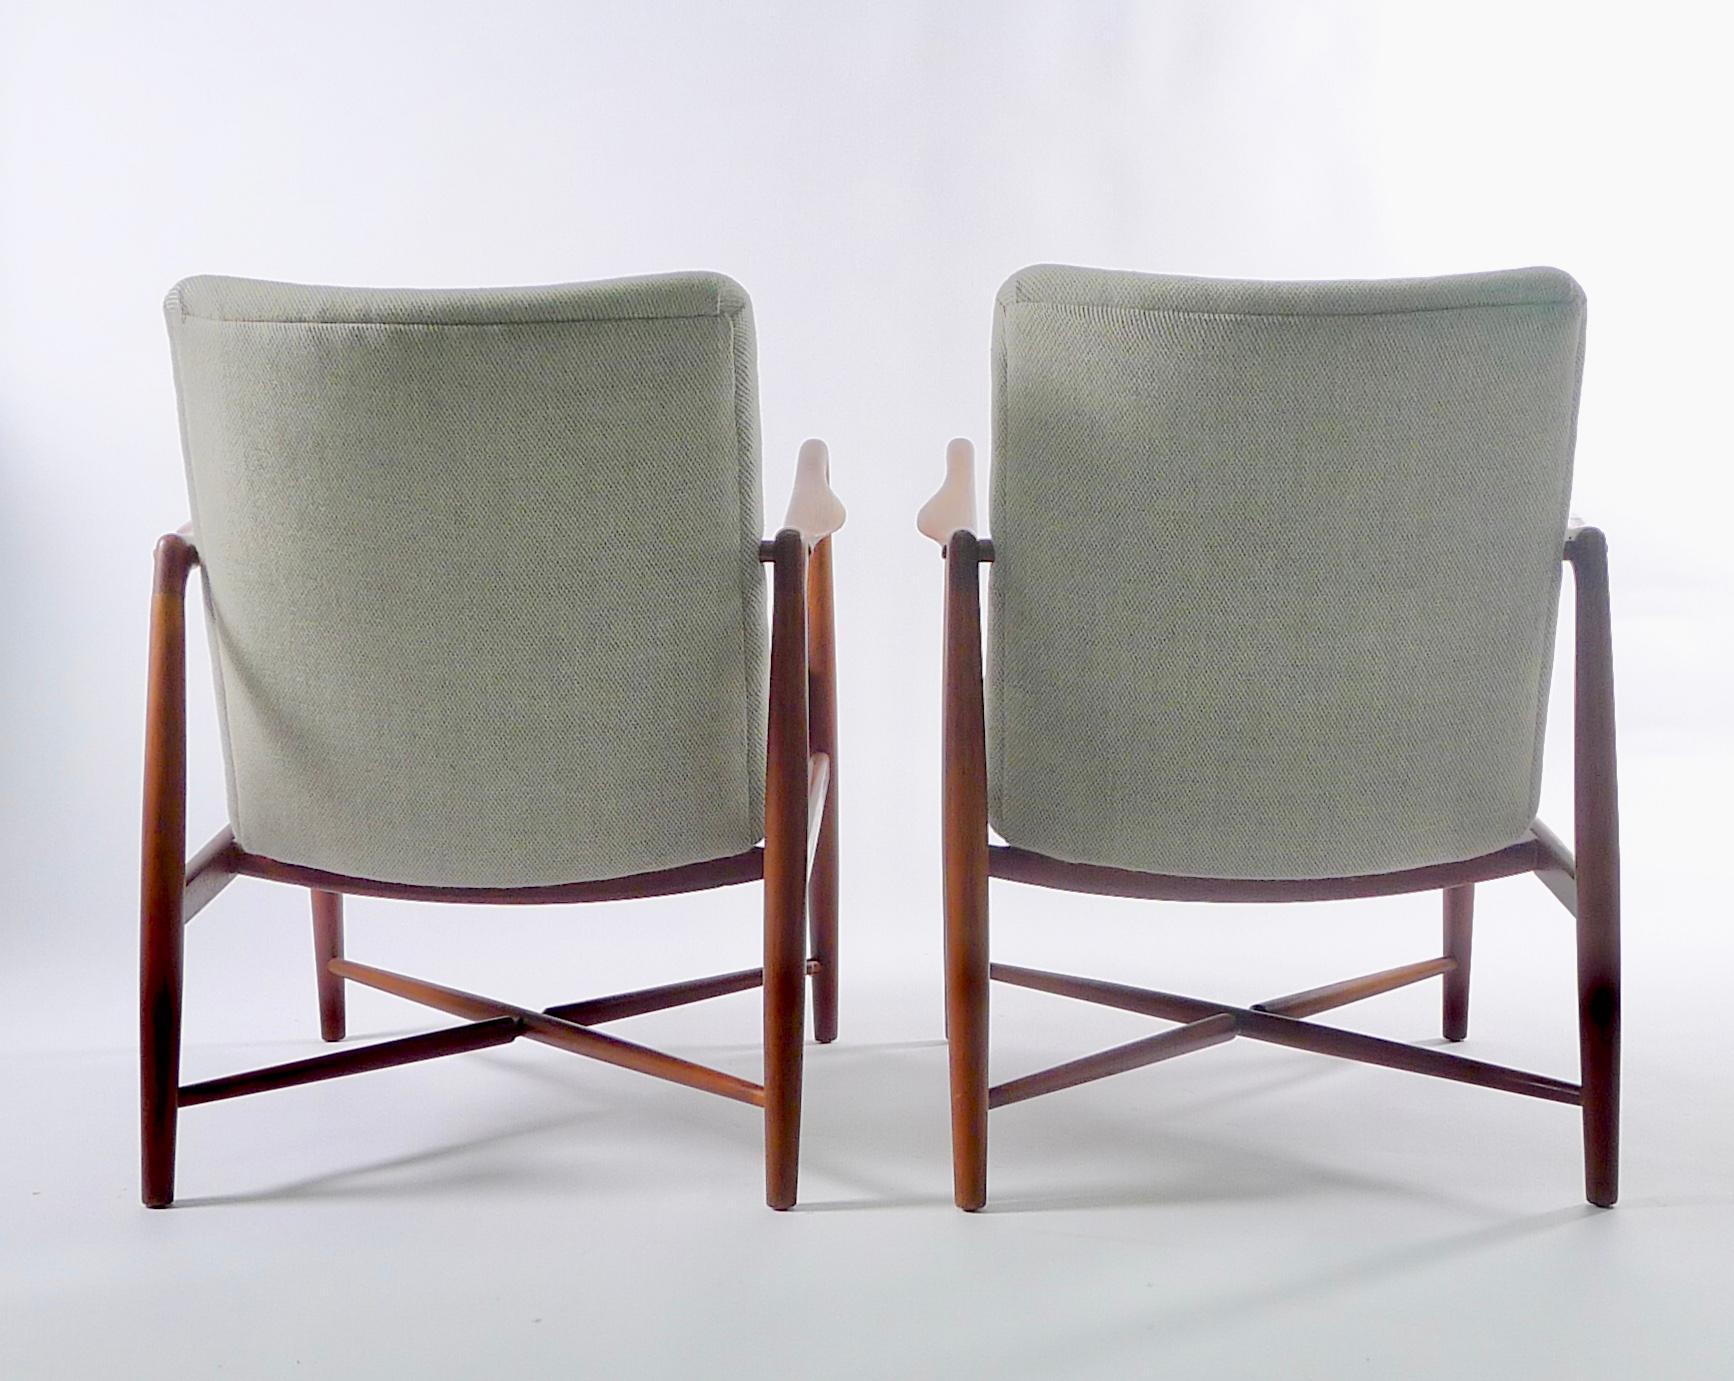 Scandinavian Modern Finn Juhl, Pair of Teak Fireplace Chairs, Model BO59, Bovirke, Denmark, 1946